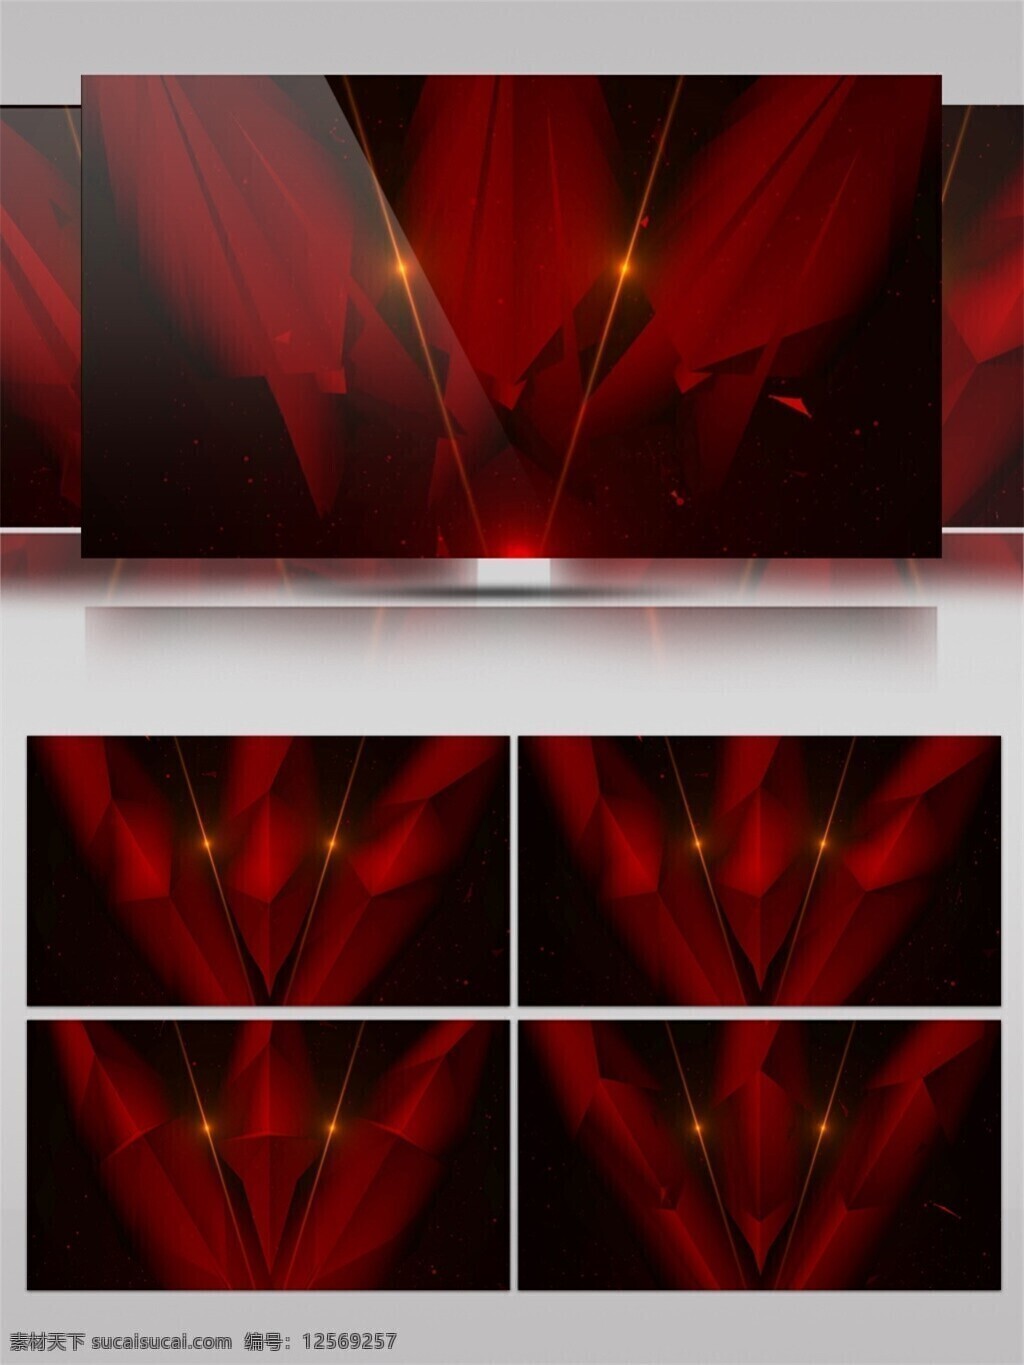 梦幻 三角 光束 视频 激光 红色 唯美背景素材 舞台背景素材 led 闪烁 灯光